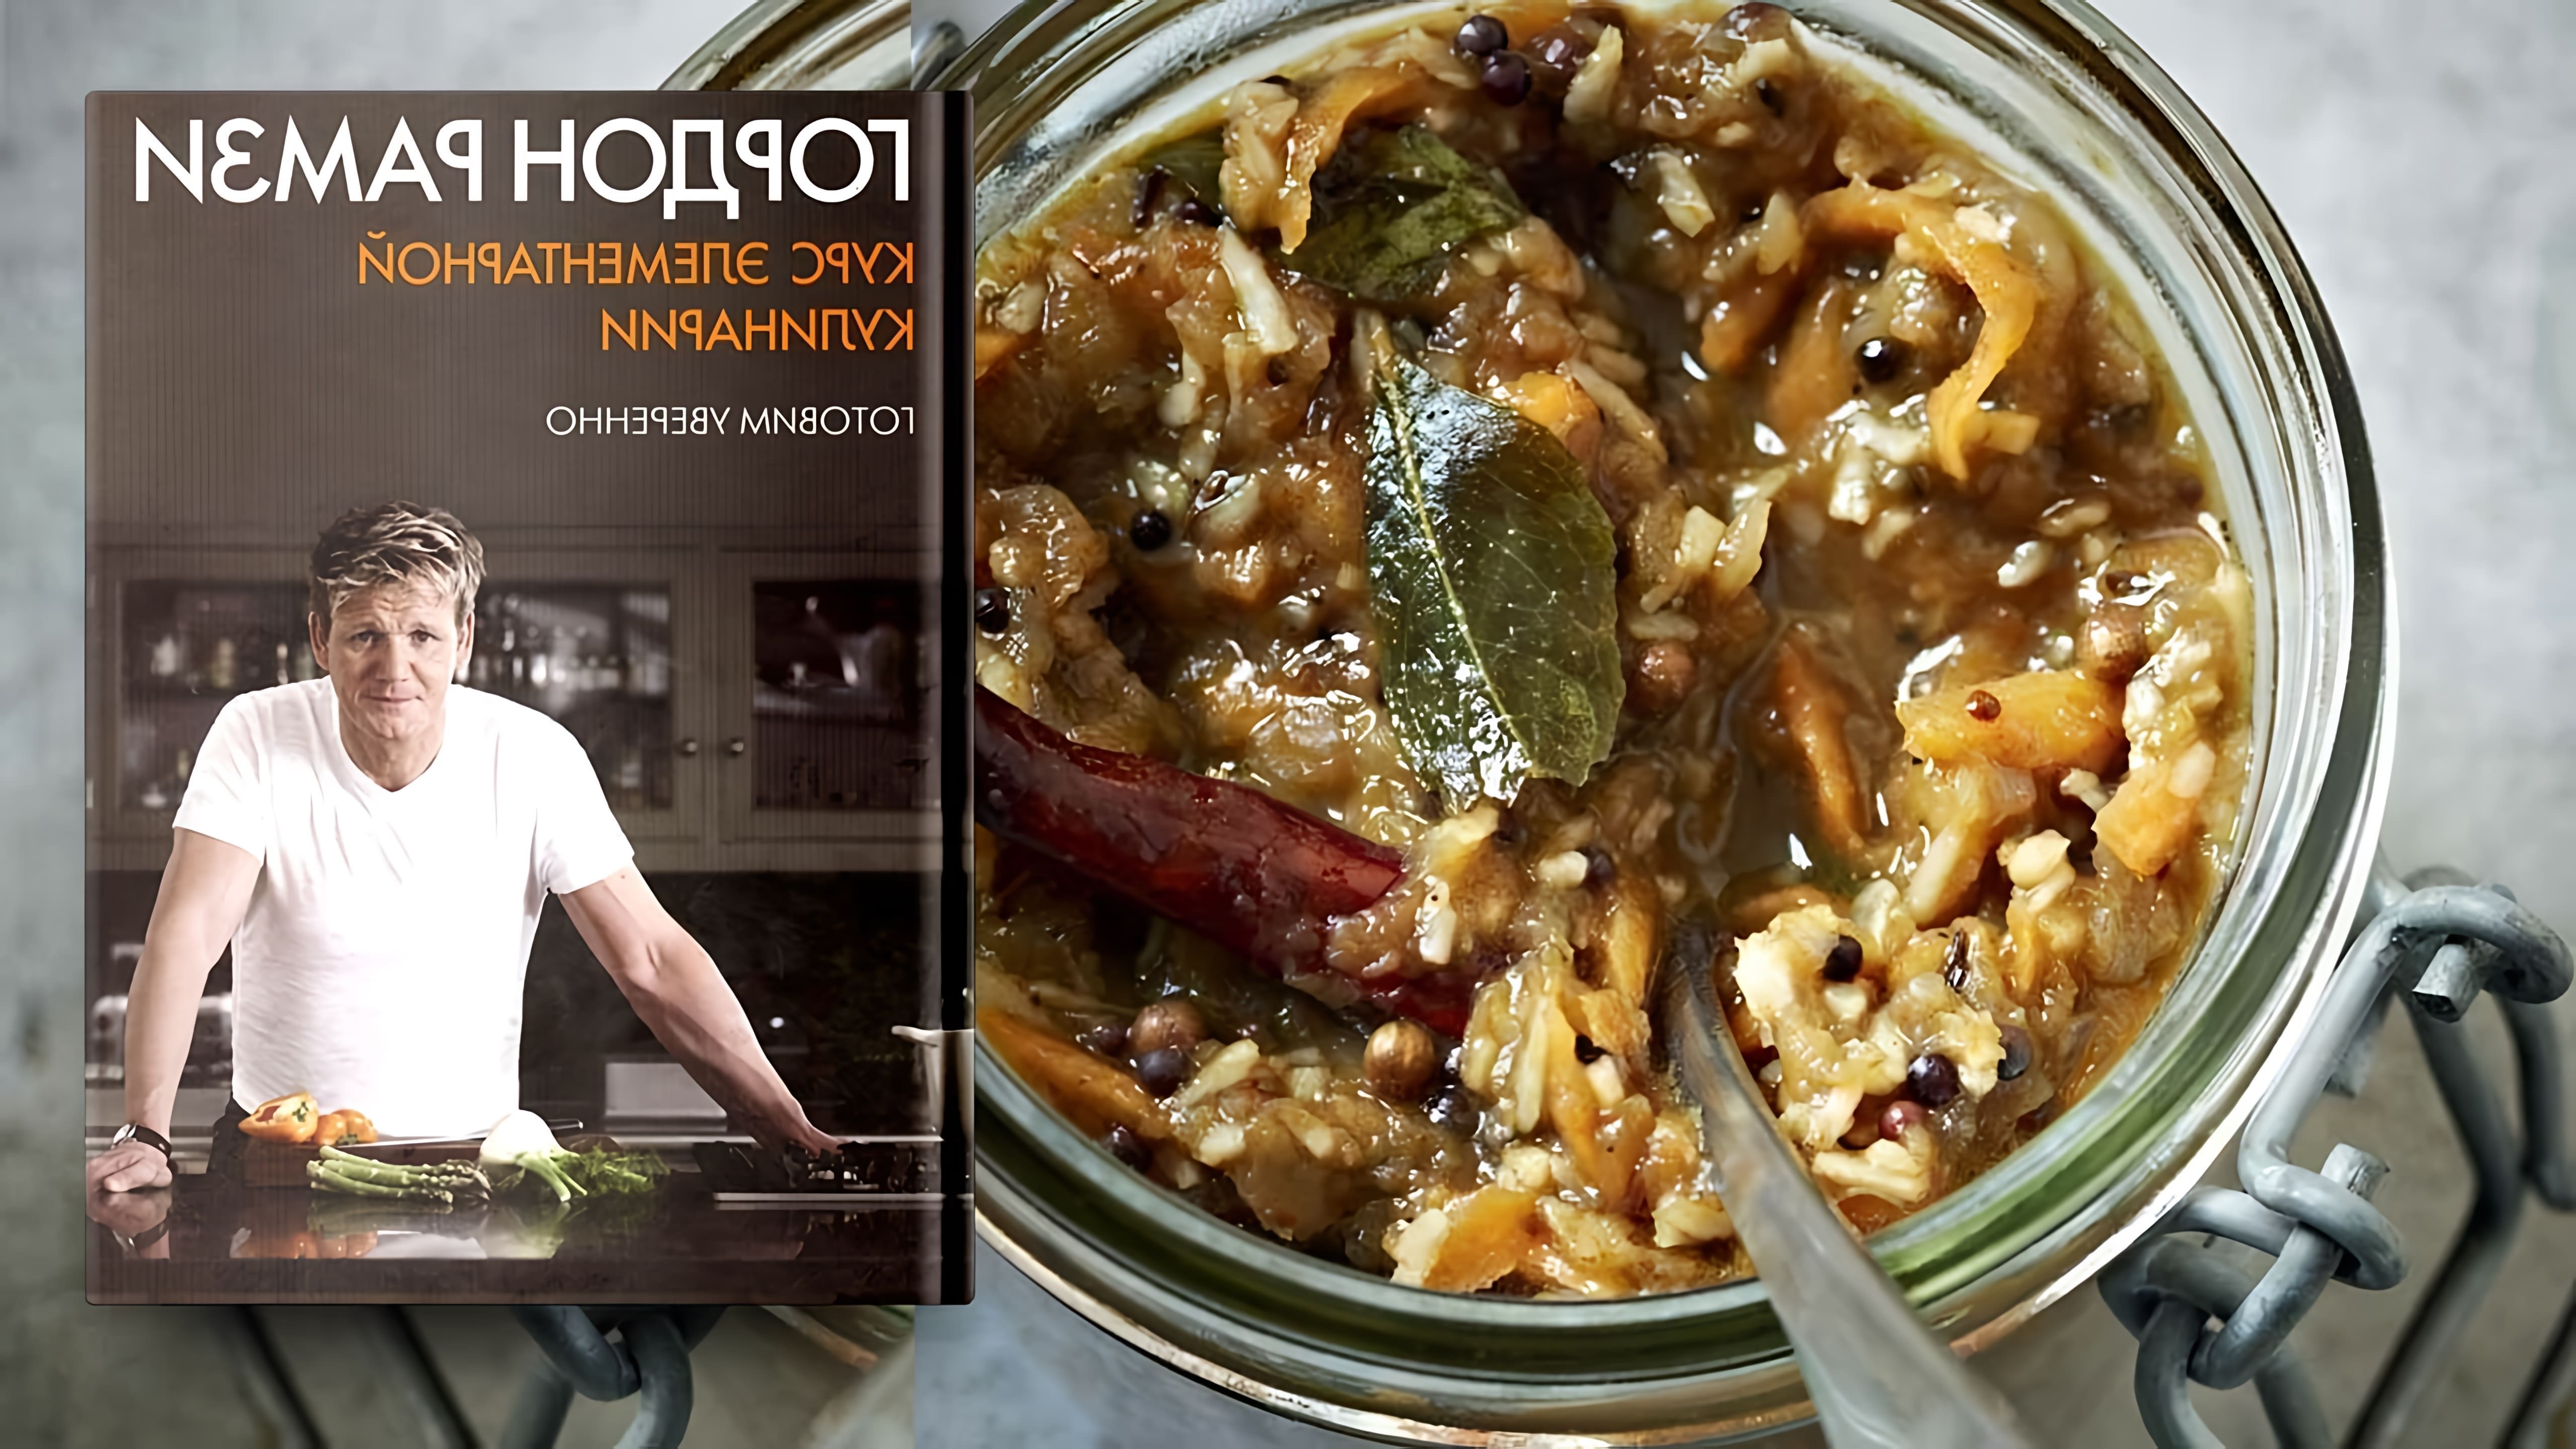 В этом видео-ролике Гордон Рамзи делится своим рецептом чатни - традиционного индийского соуса, который можно использовать как дополнение к различным блюдам